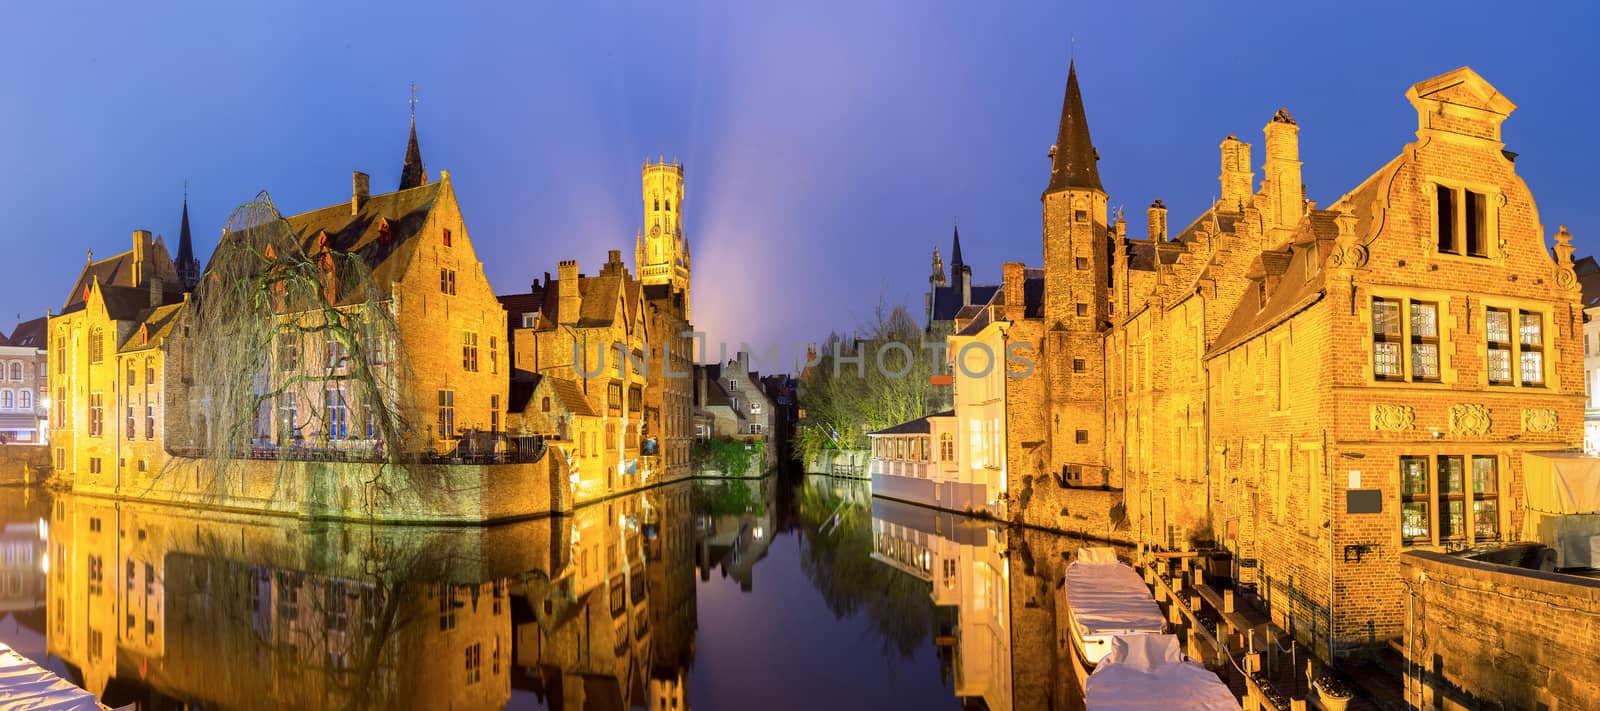 Bruges, Belgium at dusk. by vichie81